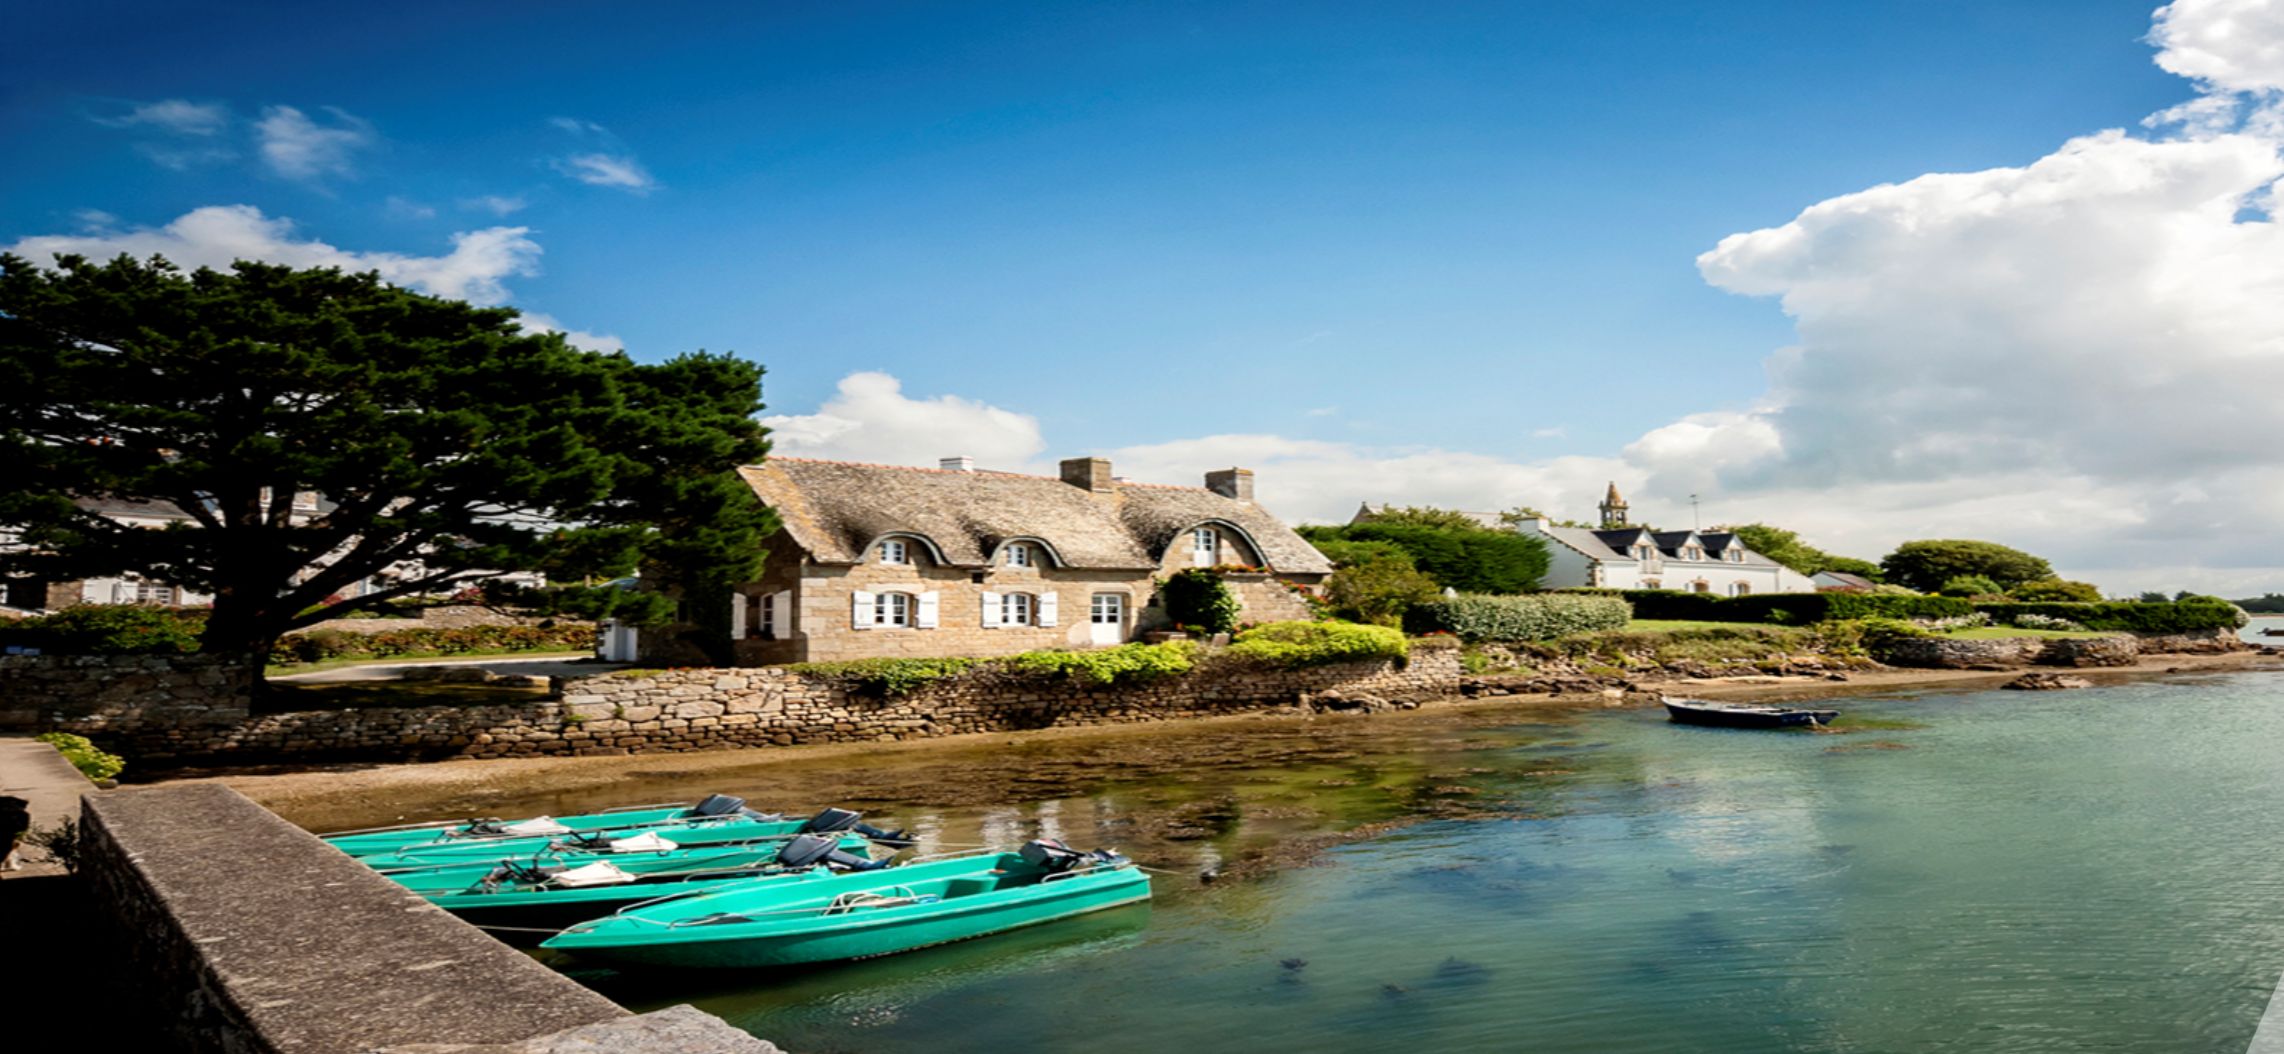 En Bretagne, la part de résidences secondaires bien supérieure à la moyenne nationale